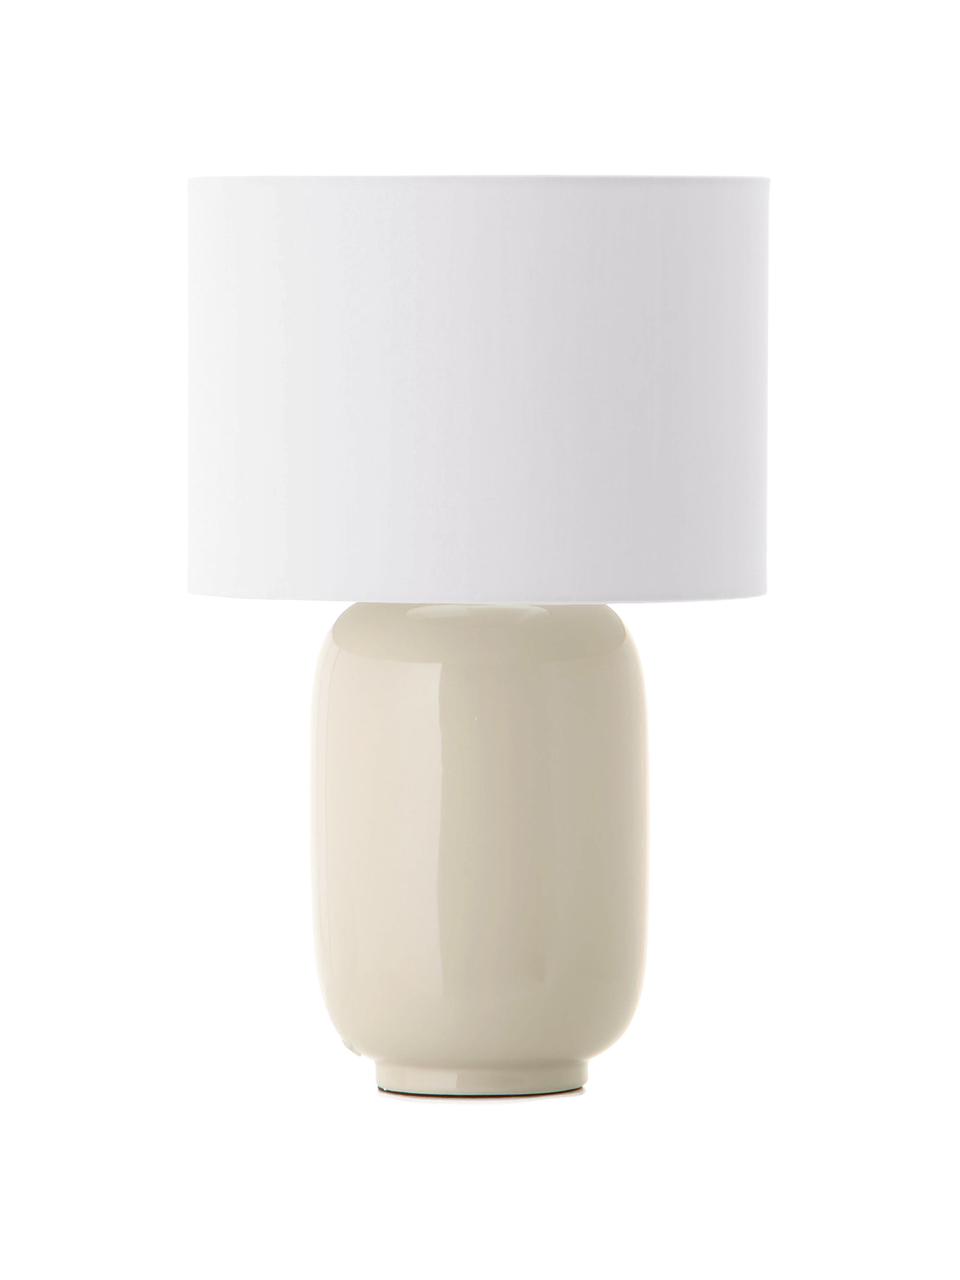 Keramik-Tischlampe Cadiz in Beige, Lampenschirm: Stoff, Lampenfuß: Keramik, Beige, Weiß, Ø 28 x H 43 cm